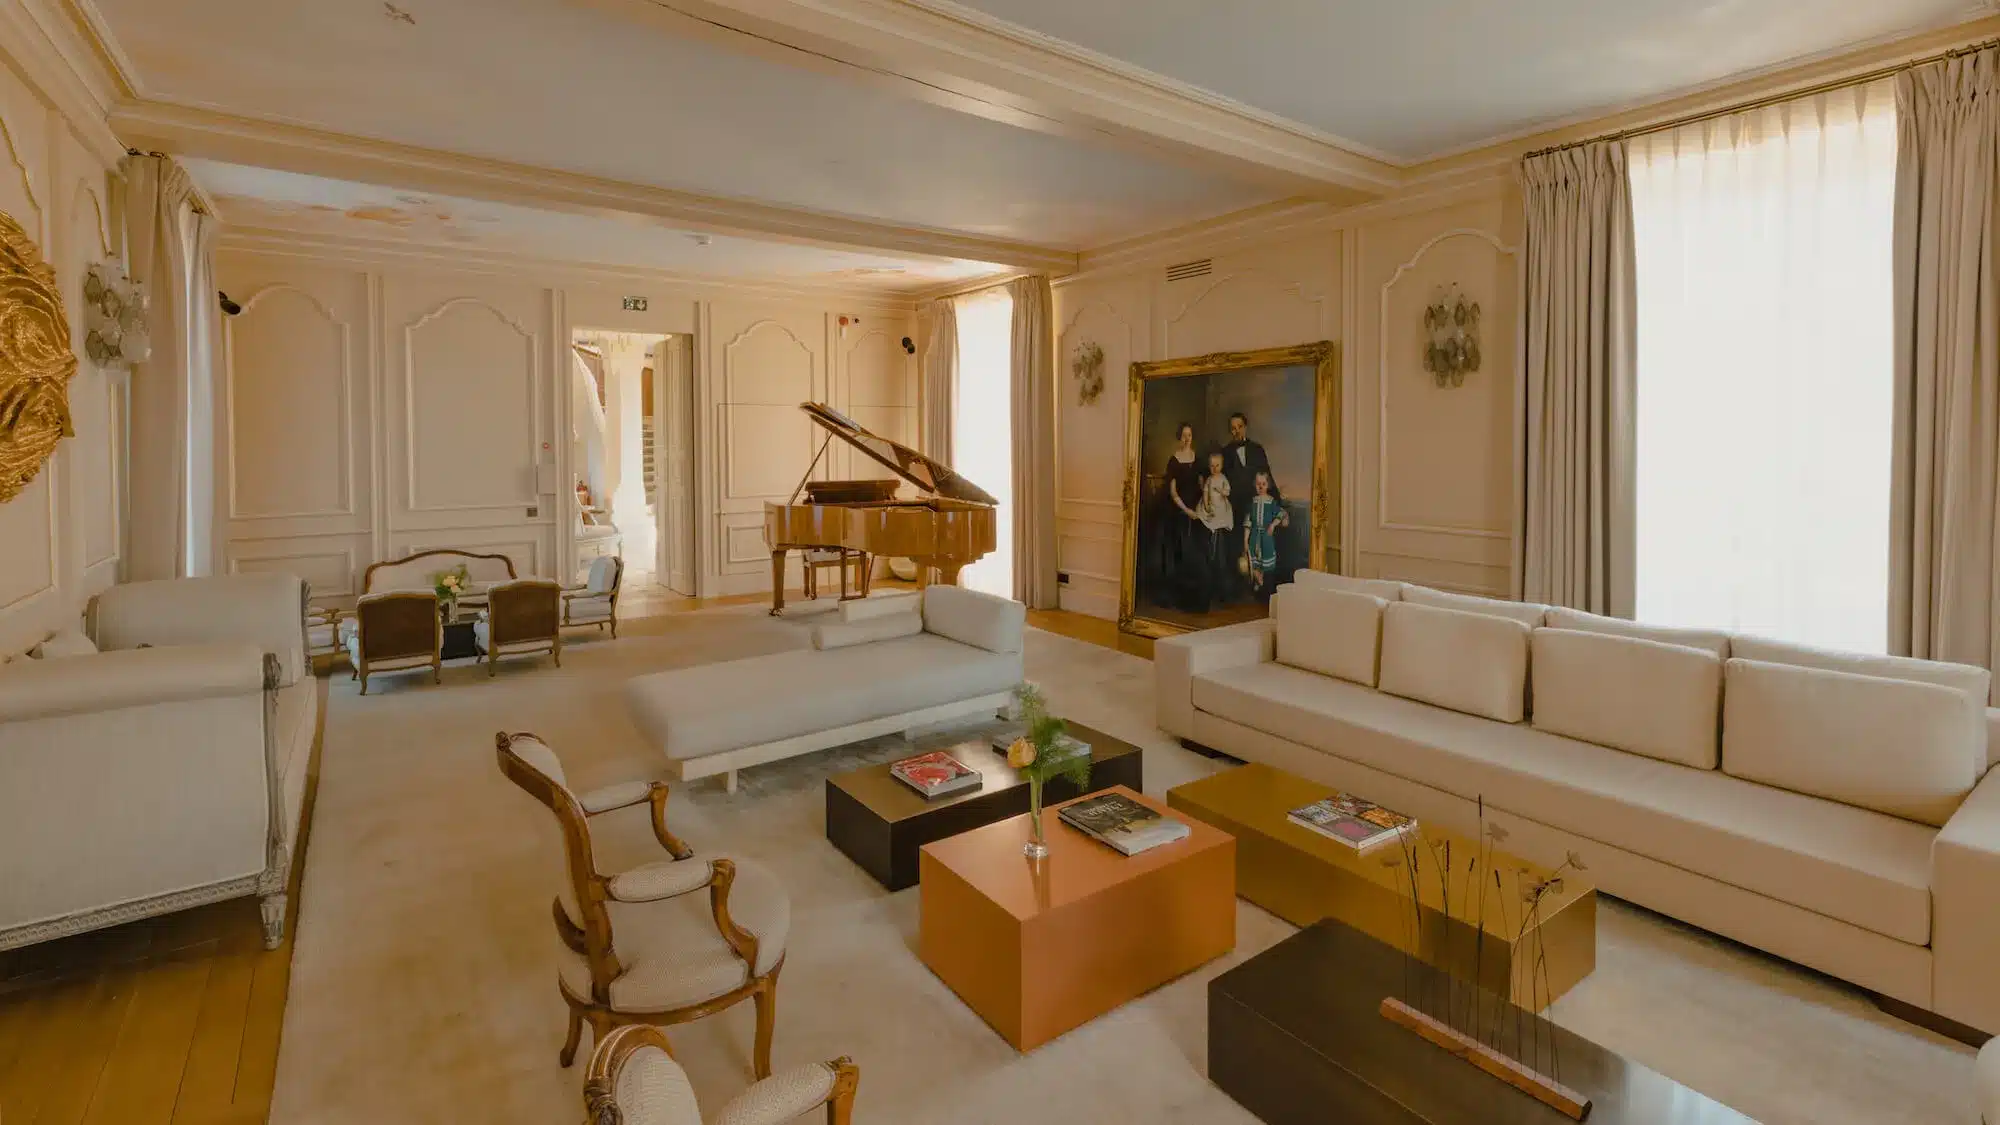 Domaine des etangs massignac France salon piano